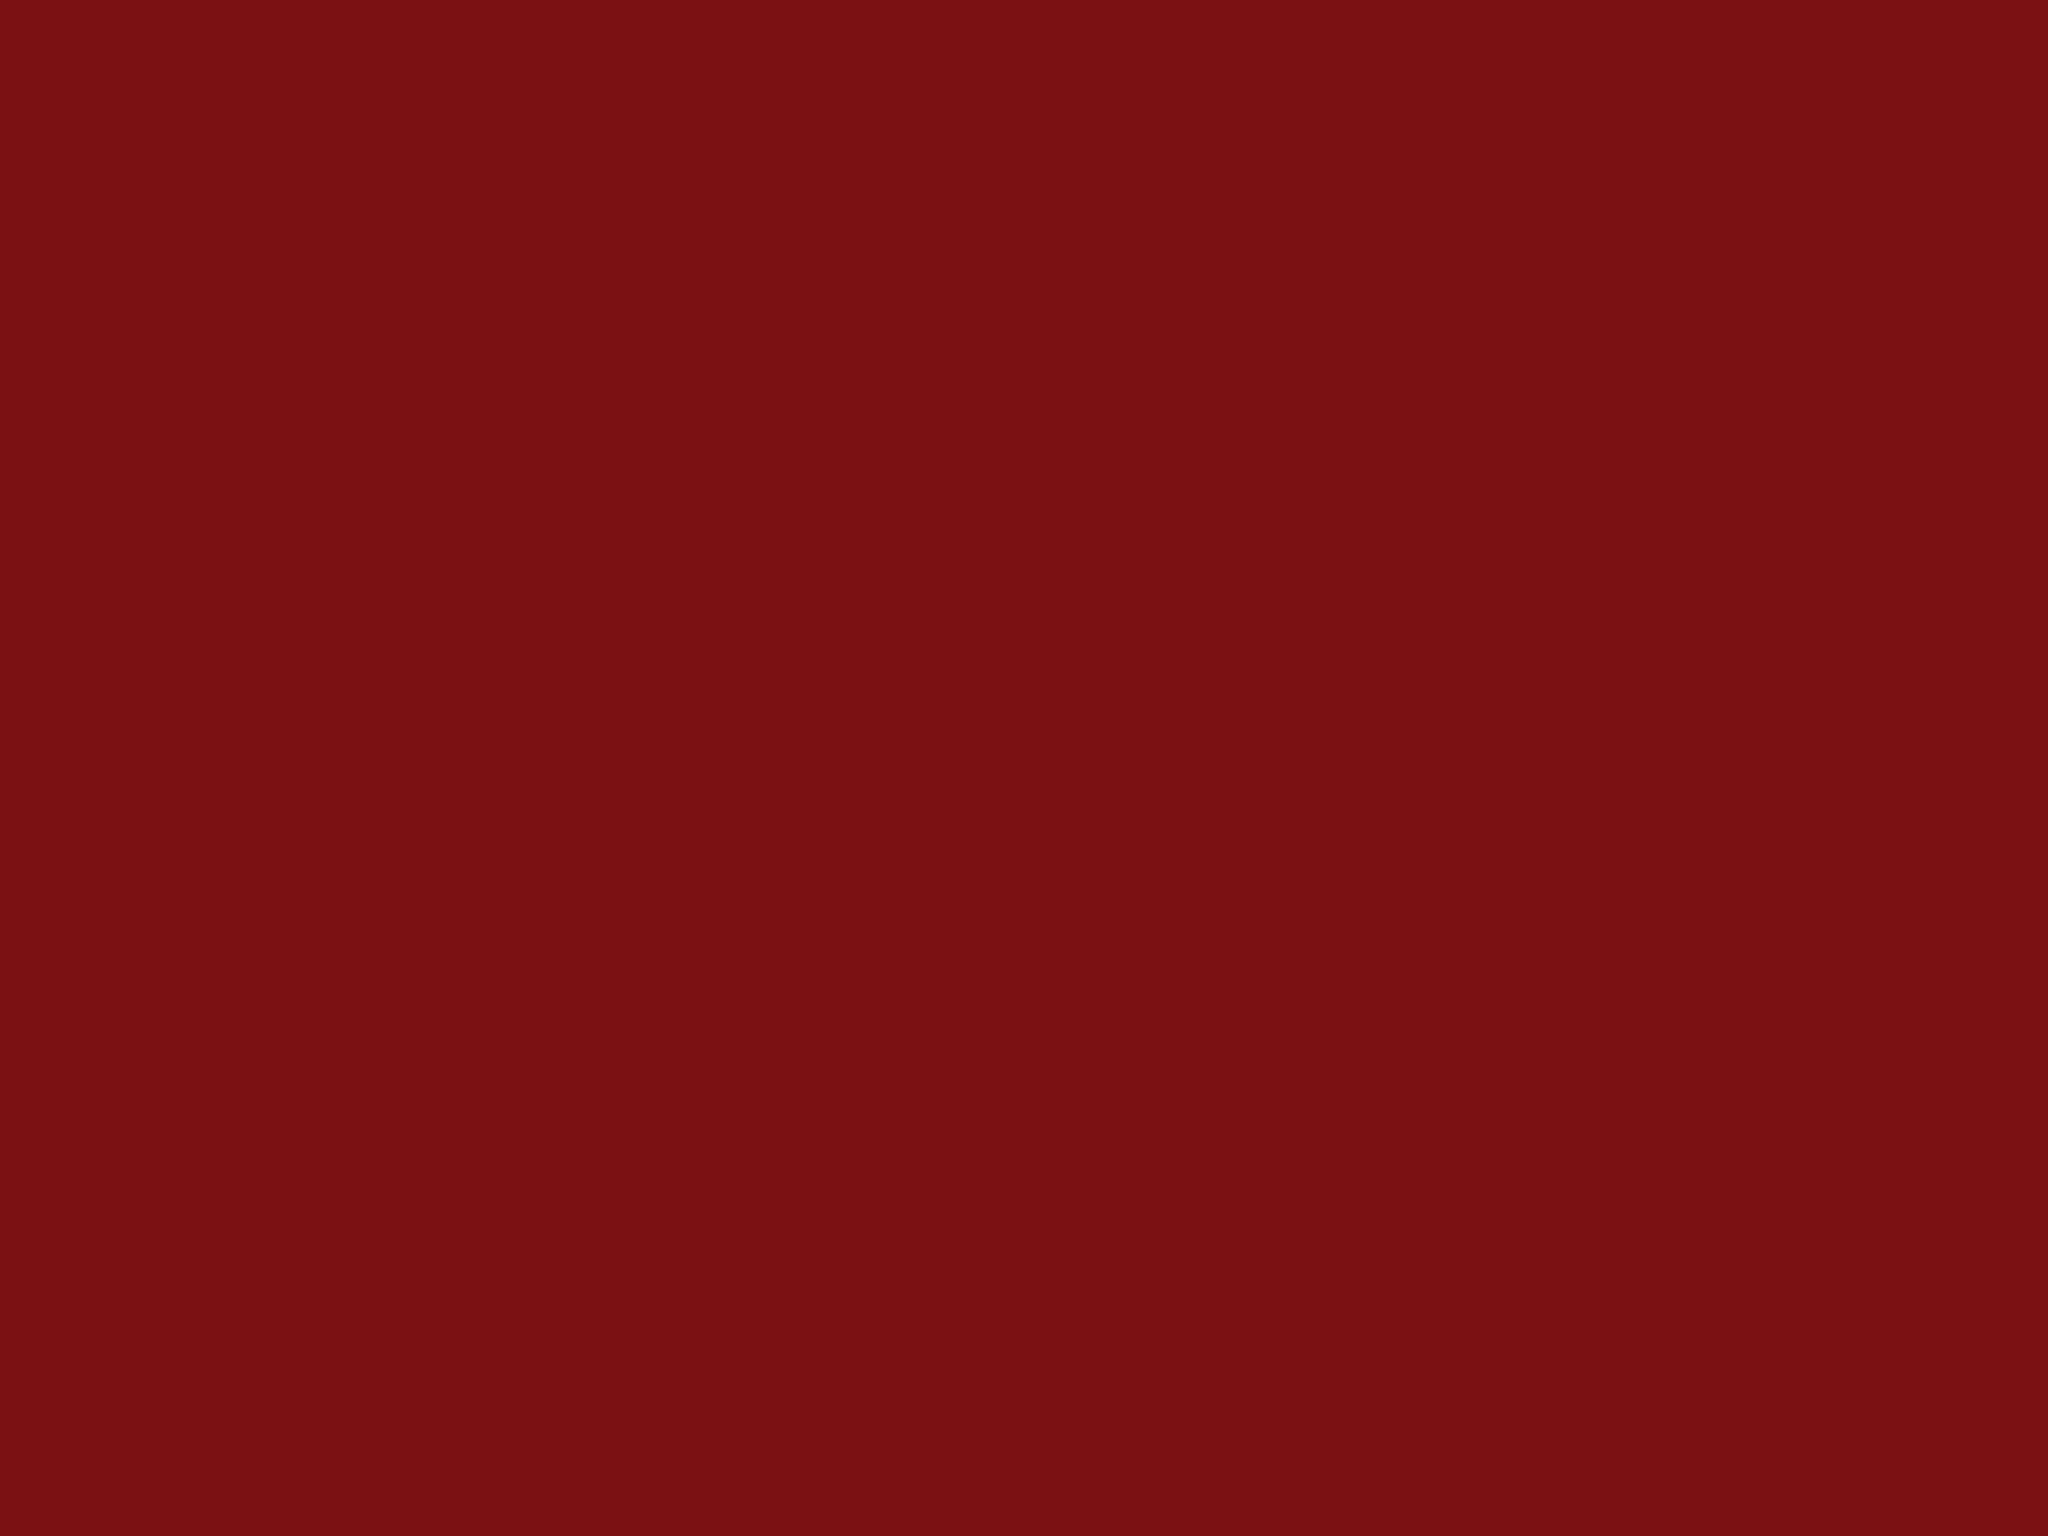 gradientmaroon wordpress for toastmasters on maroon color background